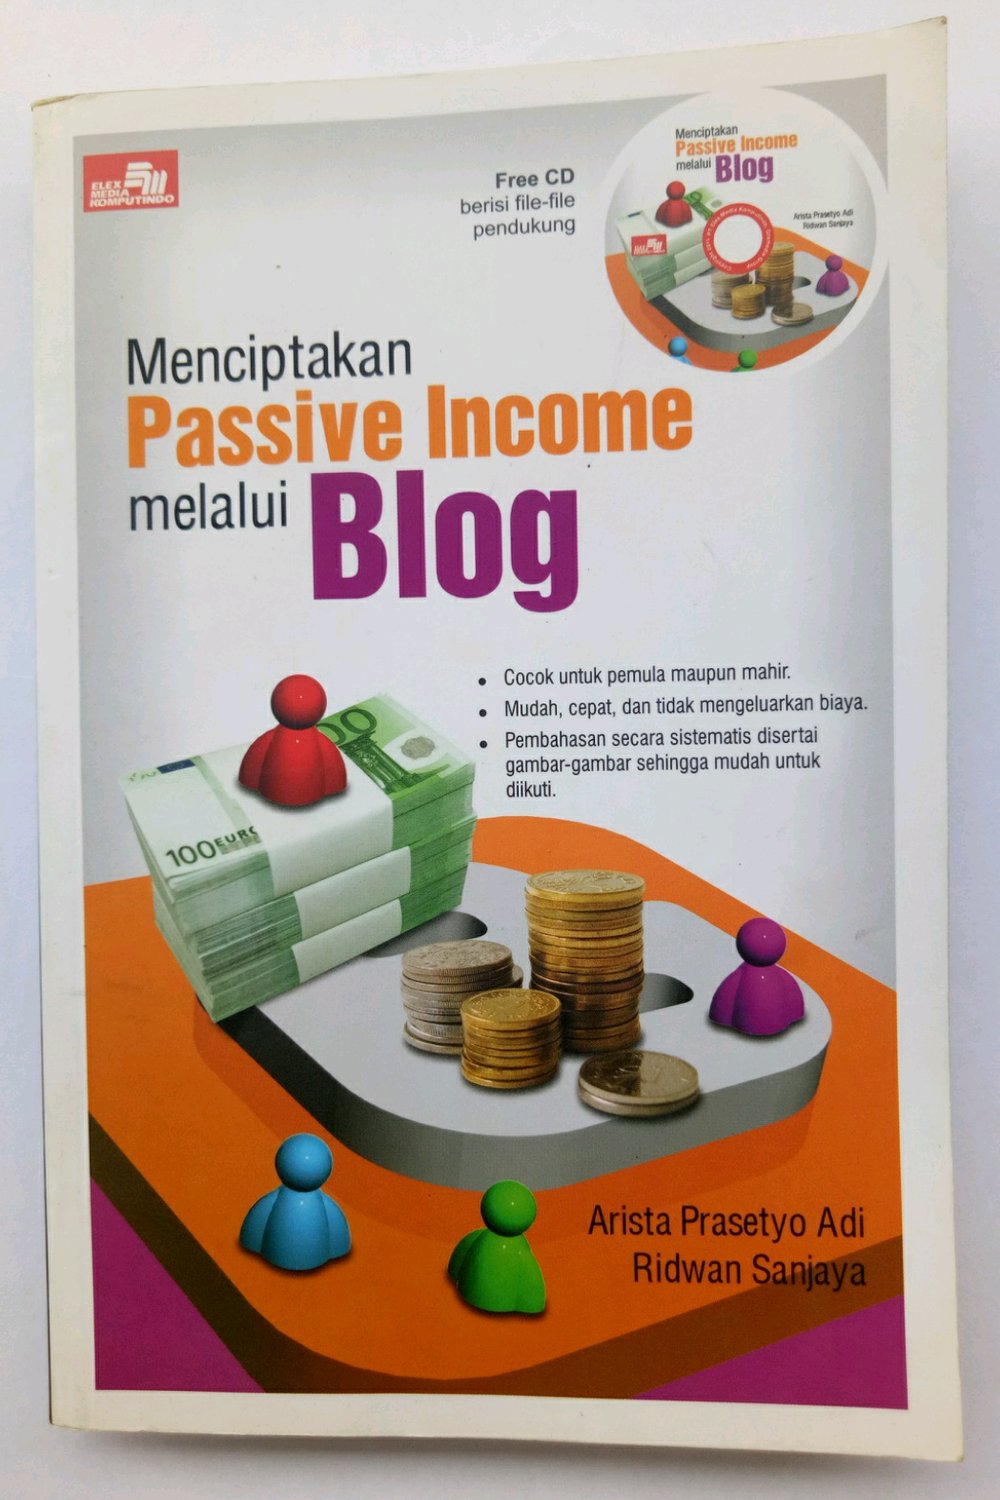 Menciptakan Passive Income melalui Blog